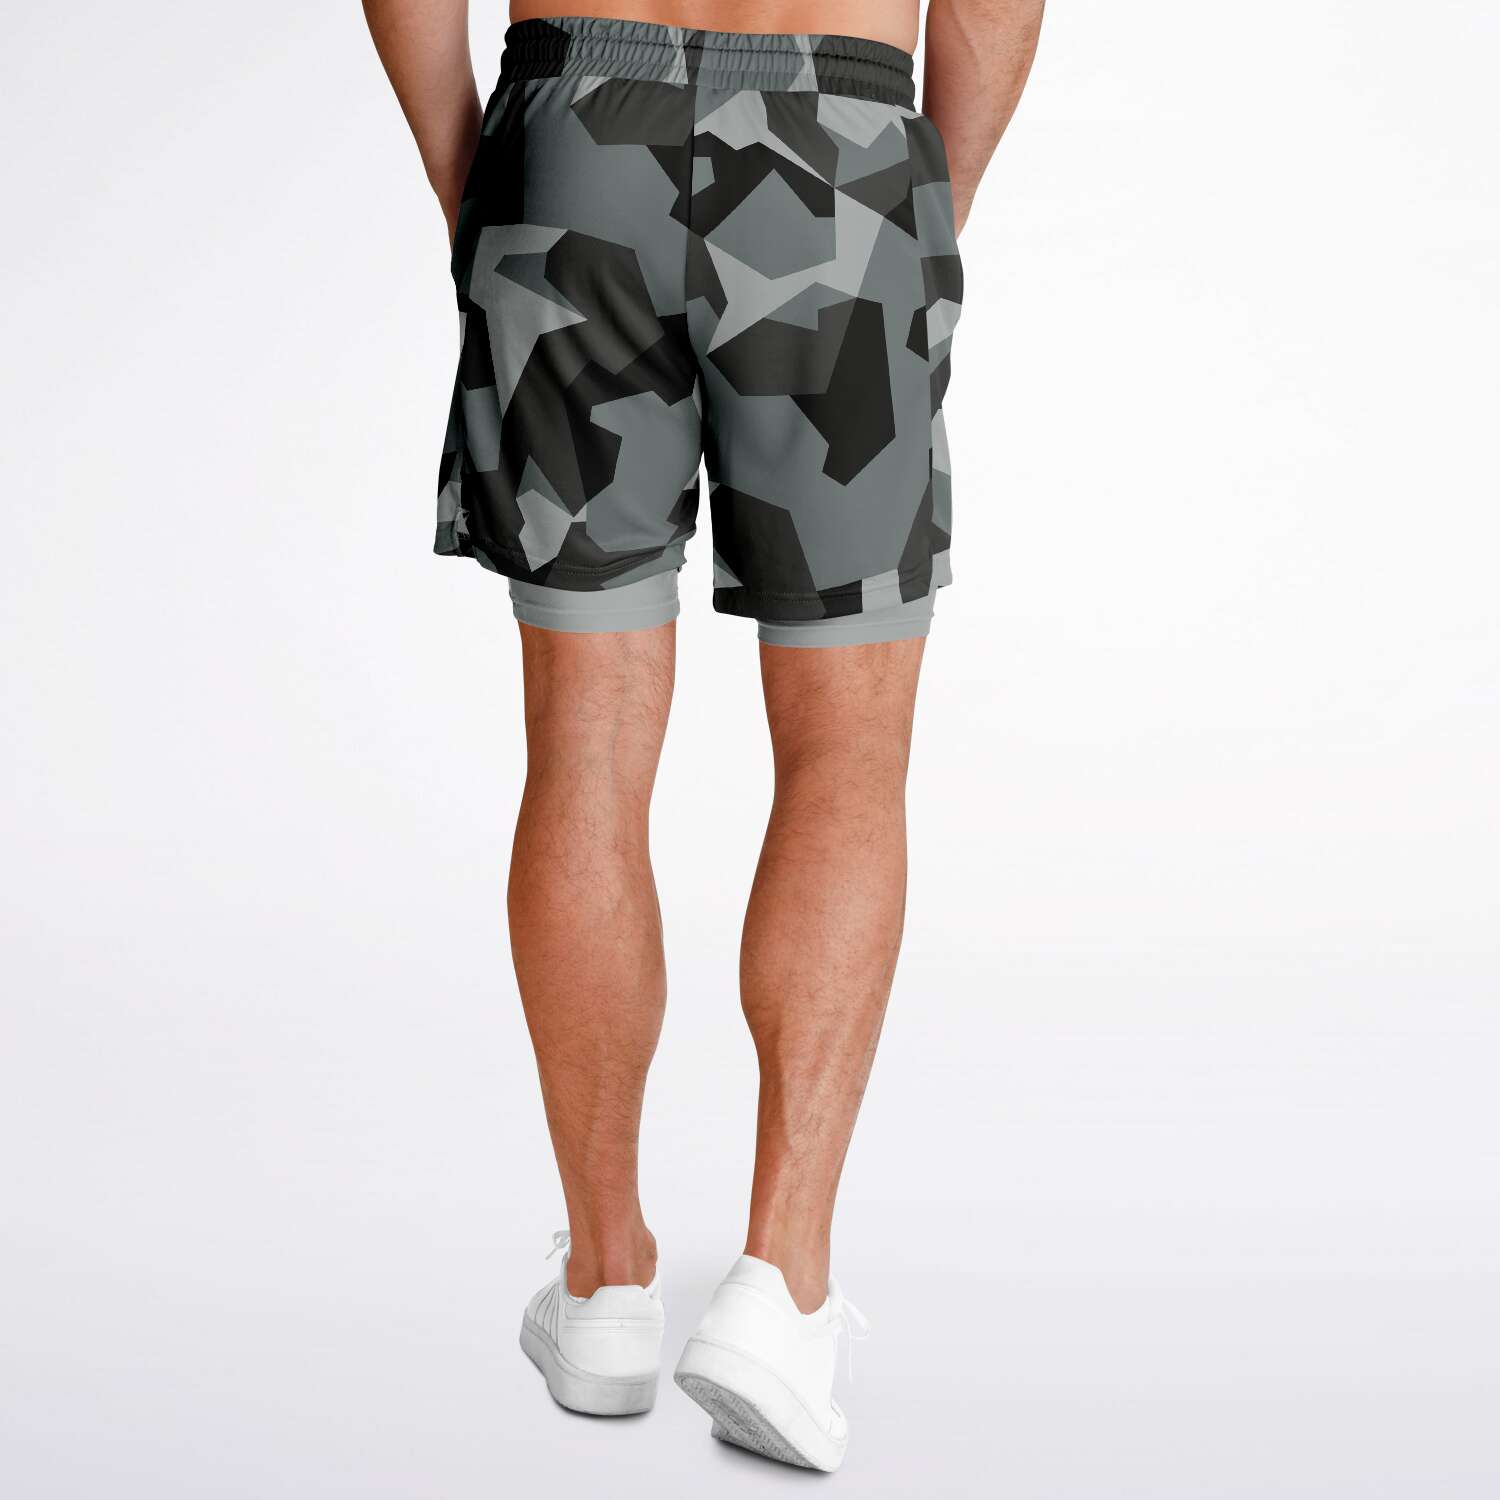 M90 Black Modern Warfare Camo Shorts